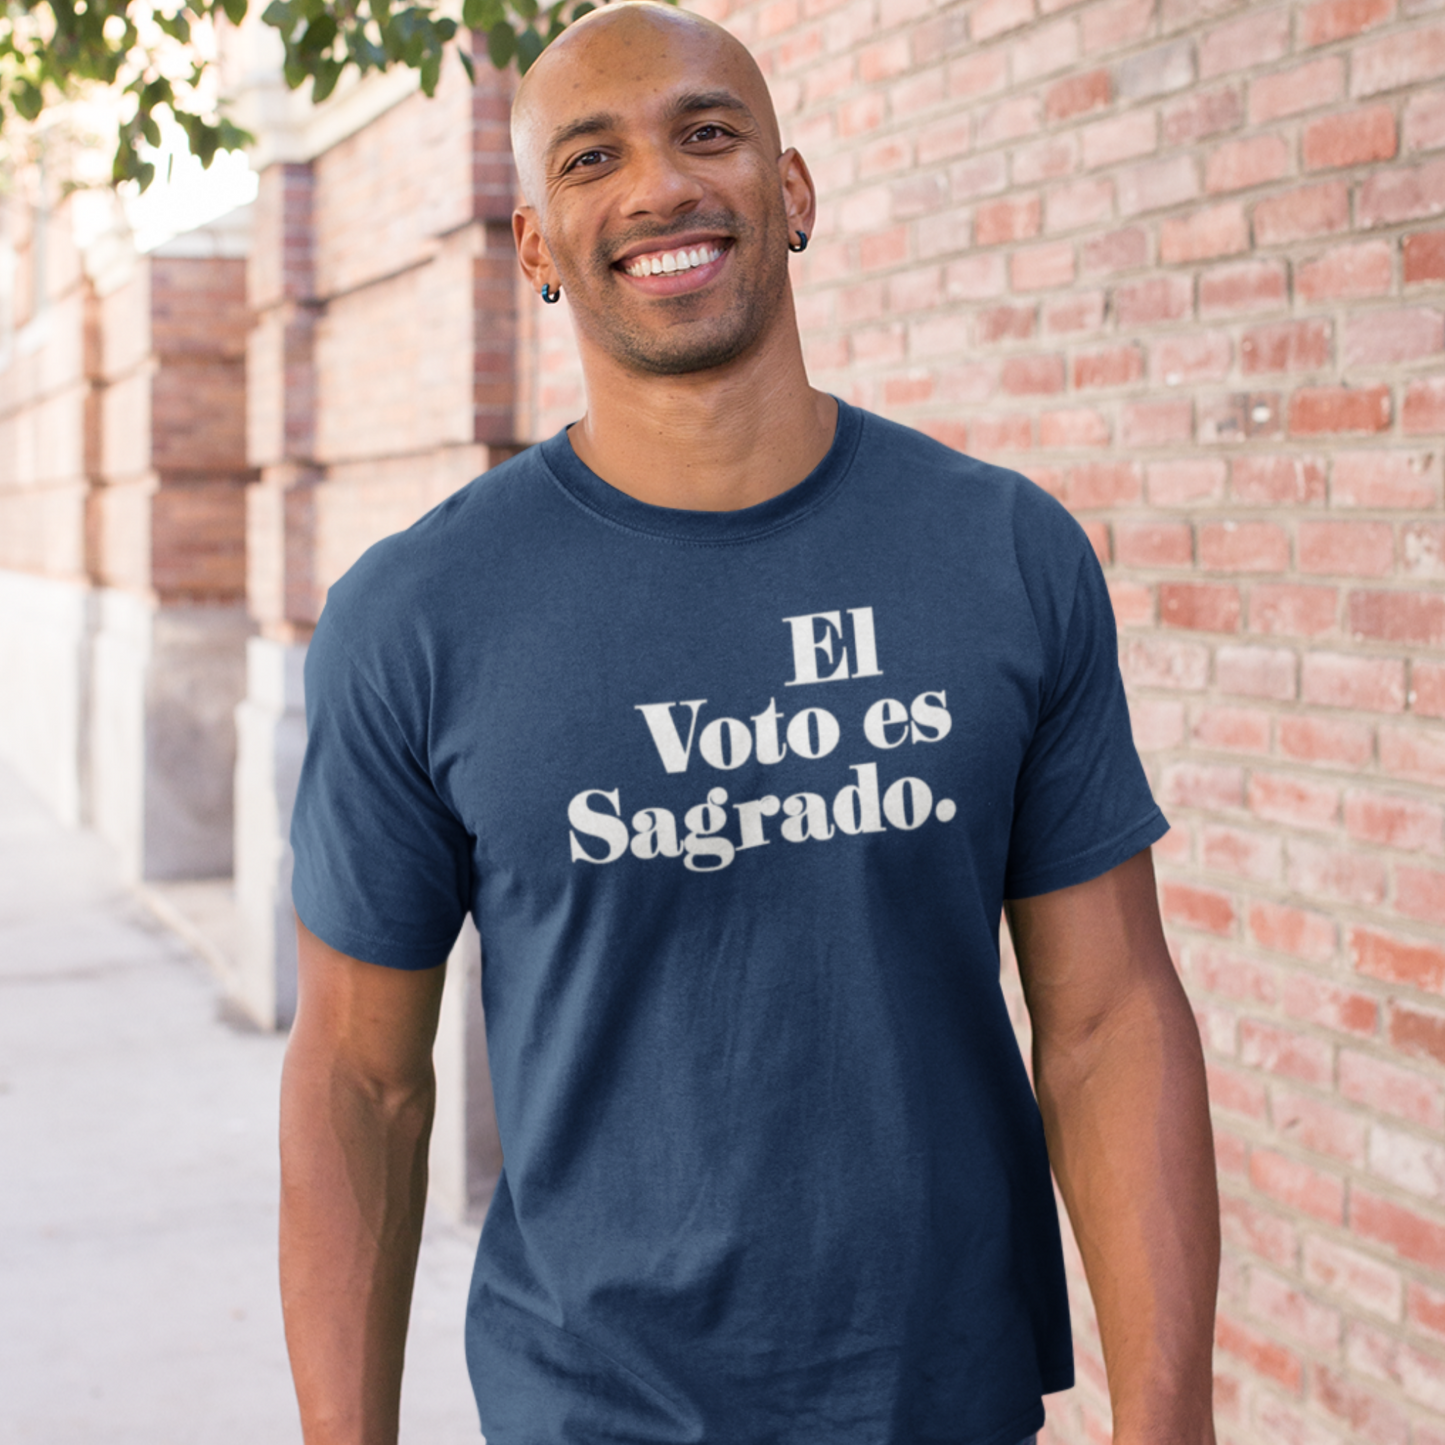 El Voto es Sagrado T-Shirt